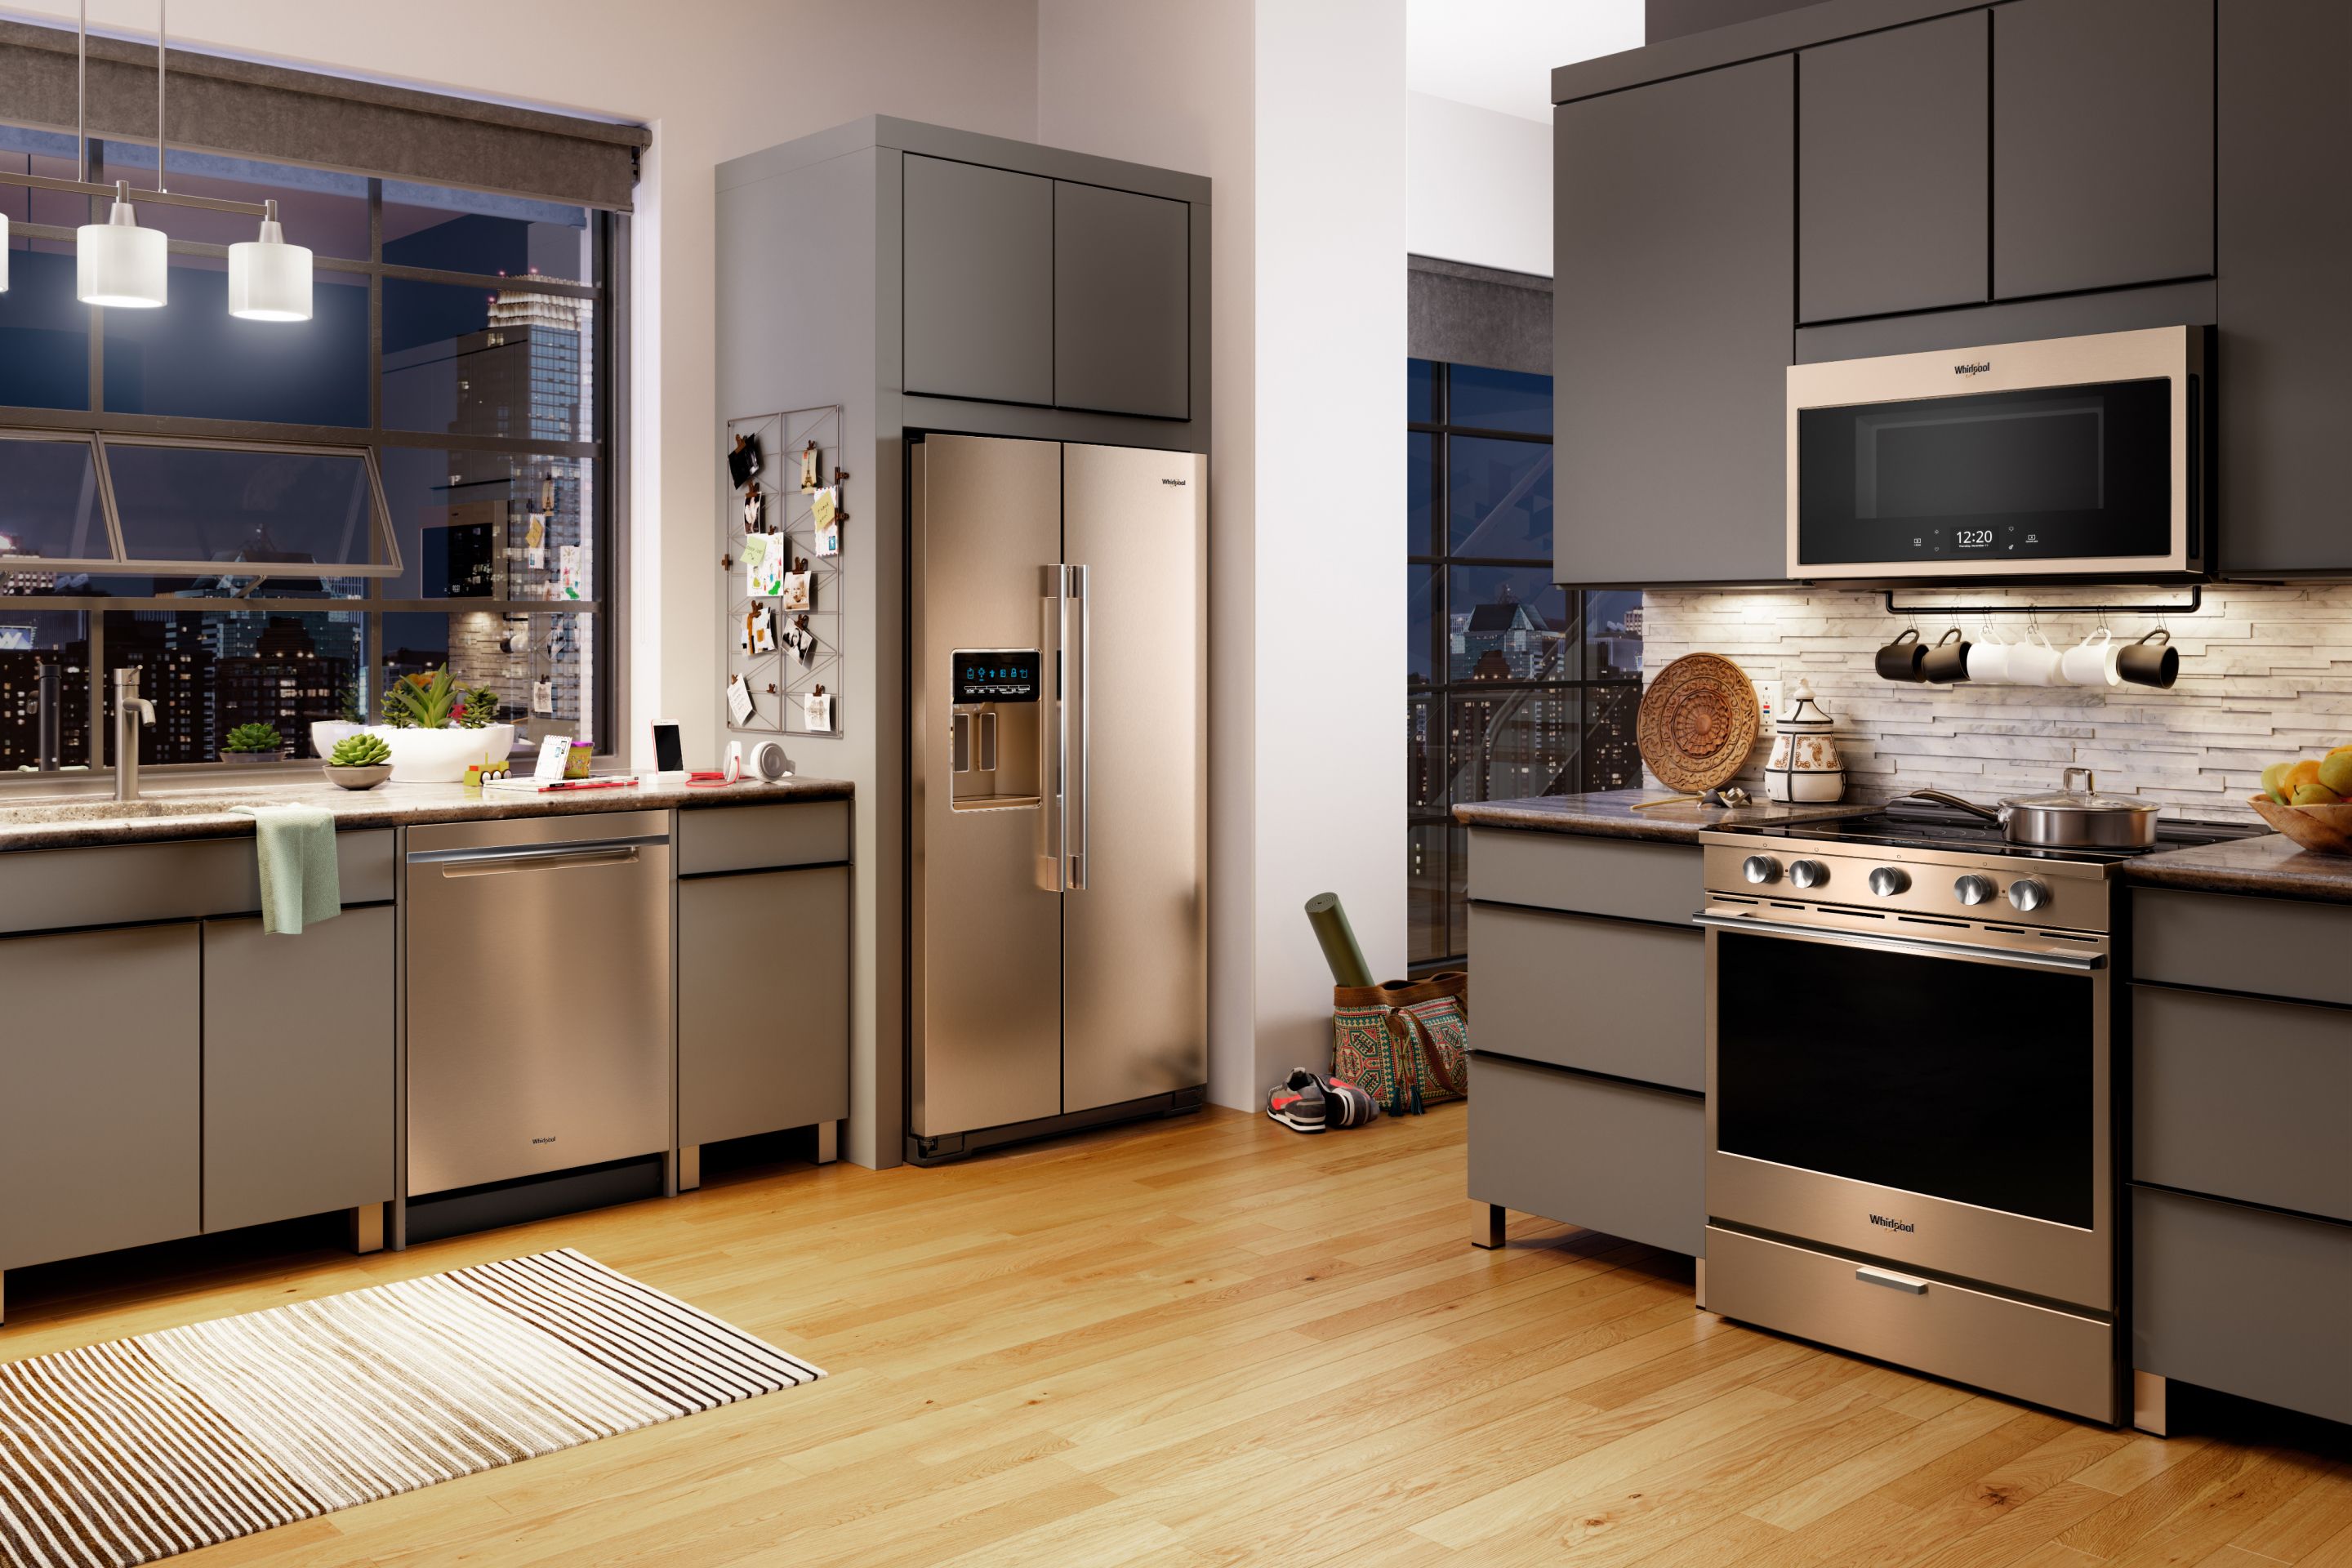 designer kitchen appliance brands